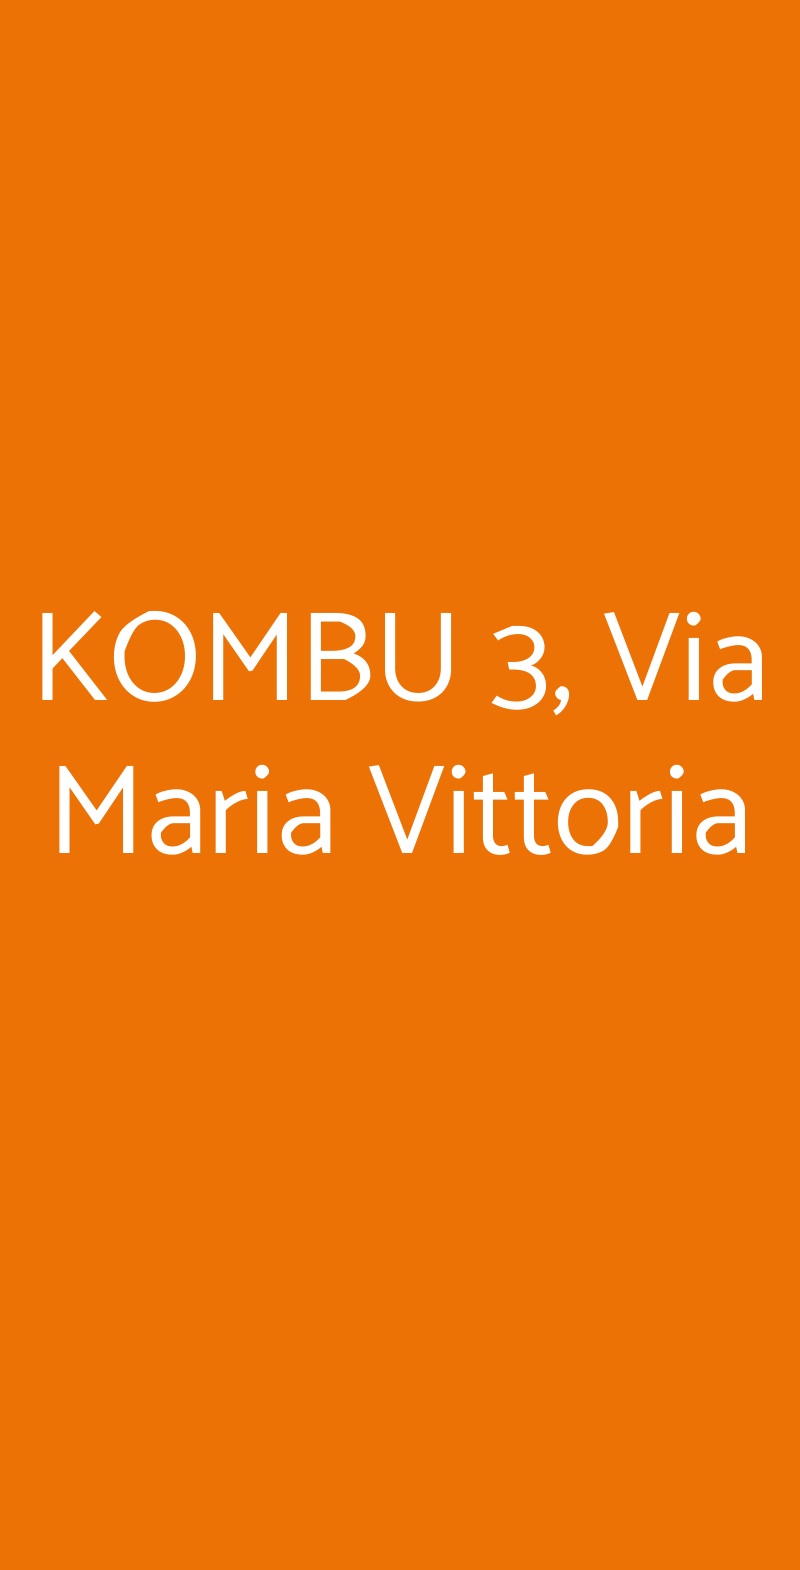 KOMBU 3, Via Maria Vittoria Torino menù 1 pagina